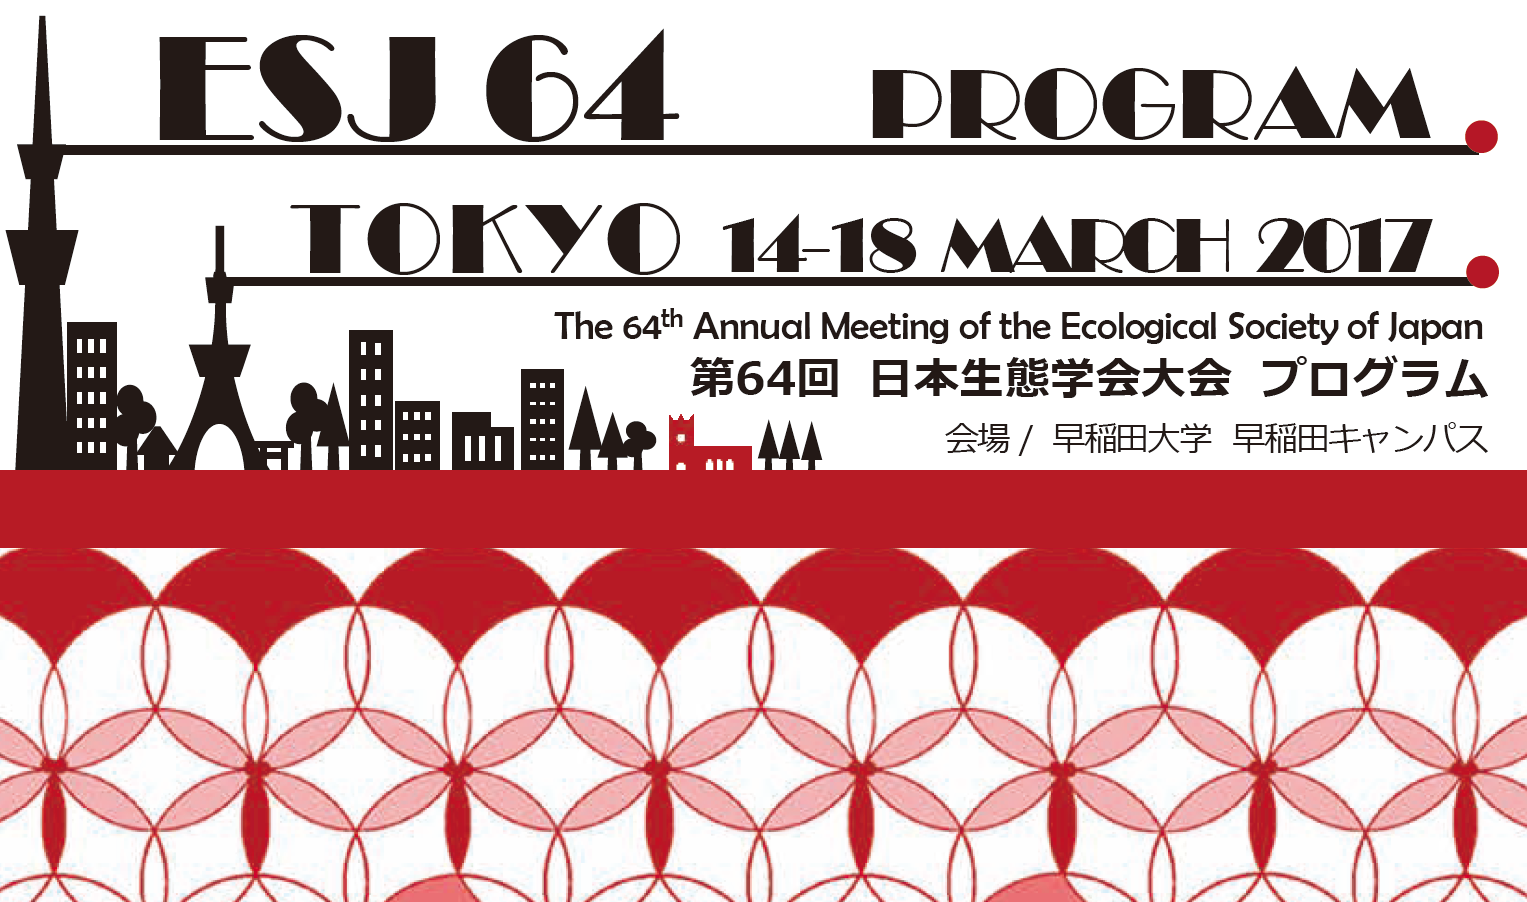 日本生態学会での講演